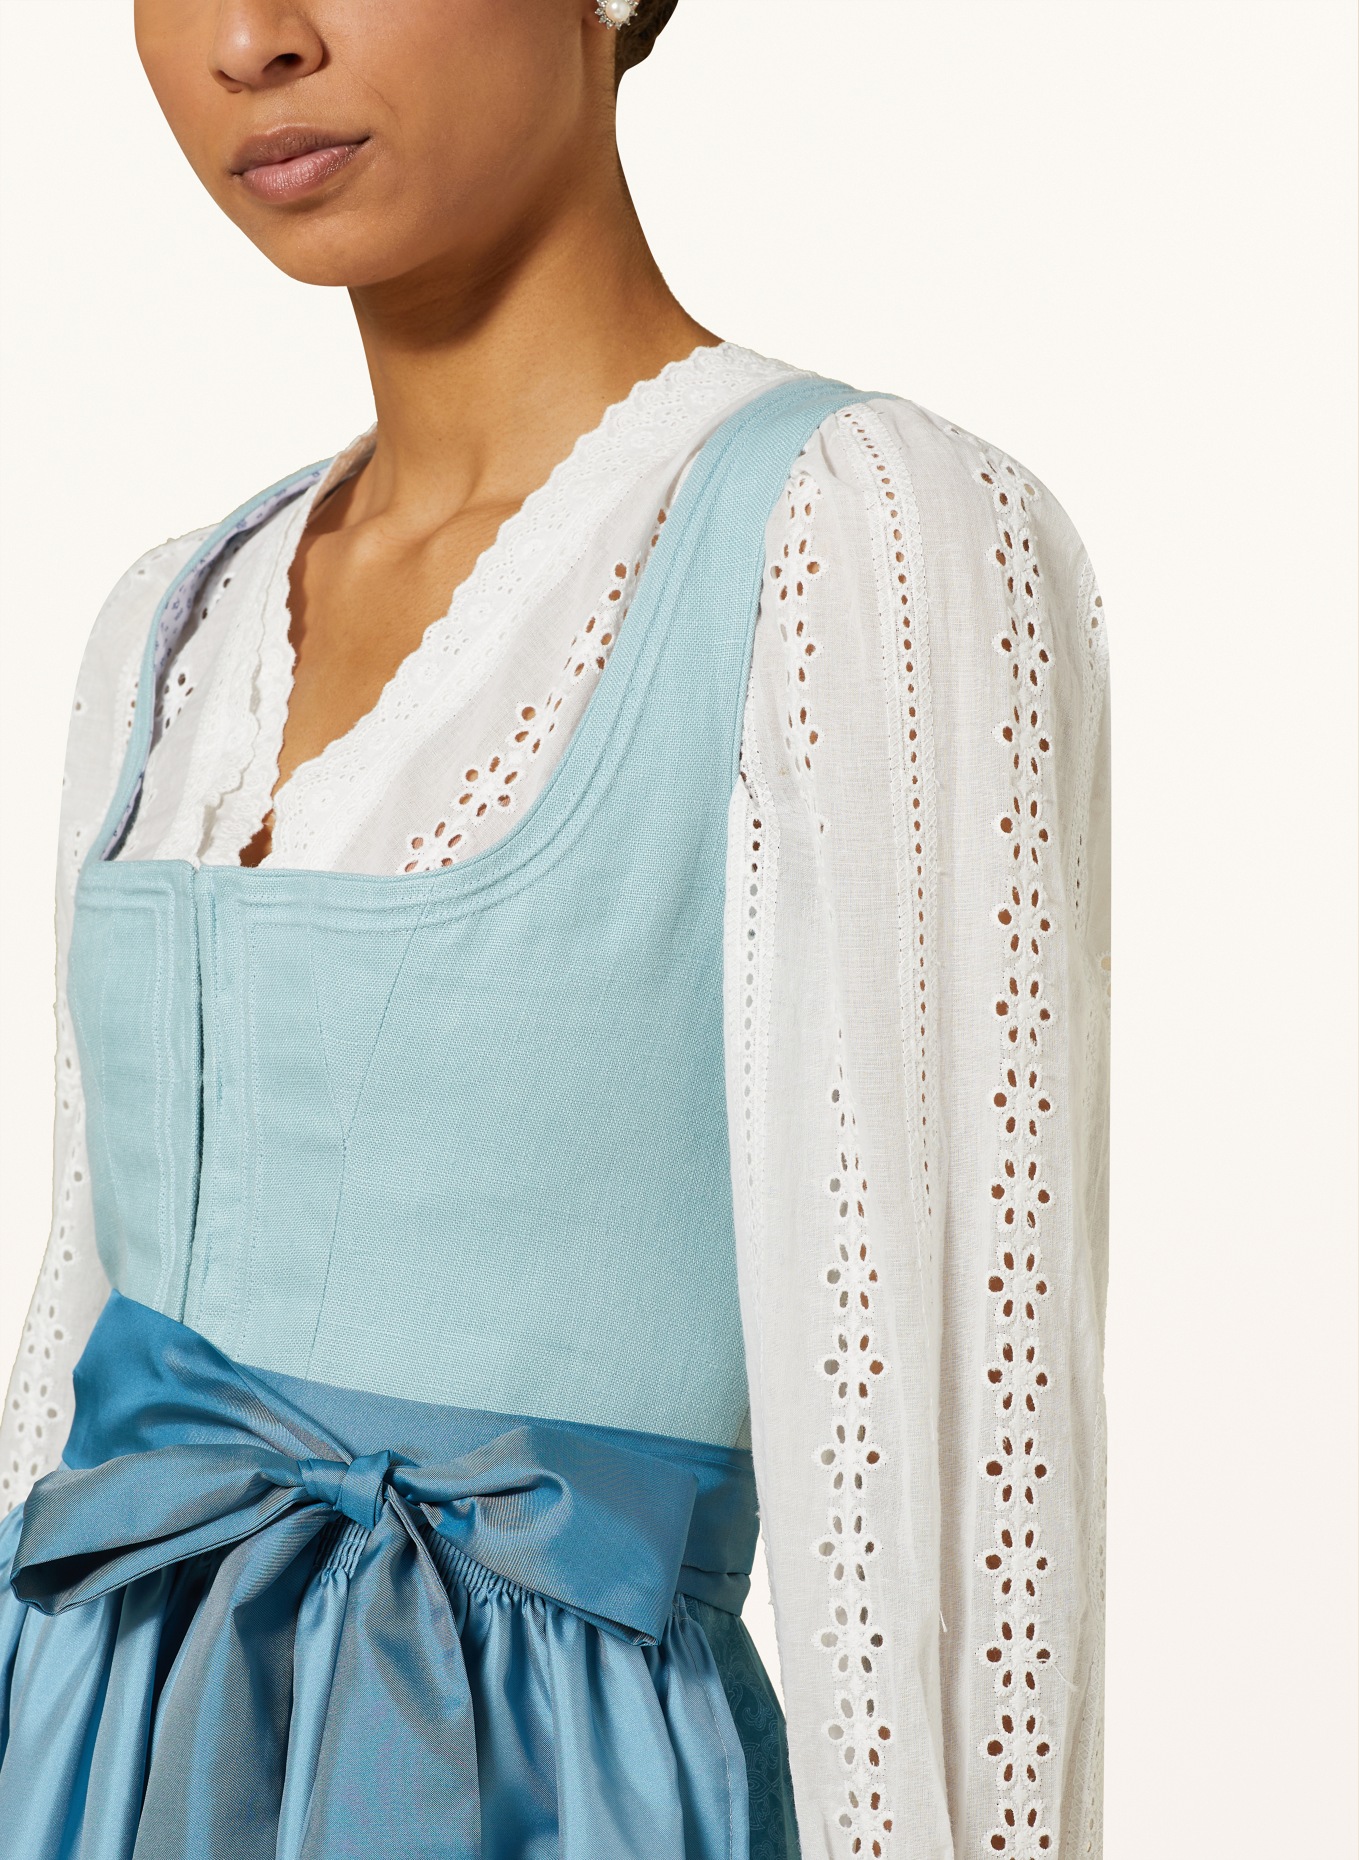 KRÜGER Dirndl blouse in broderie anglaise, Color: ECRU (Image 3)